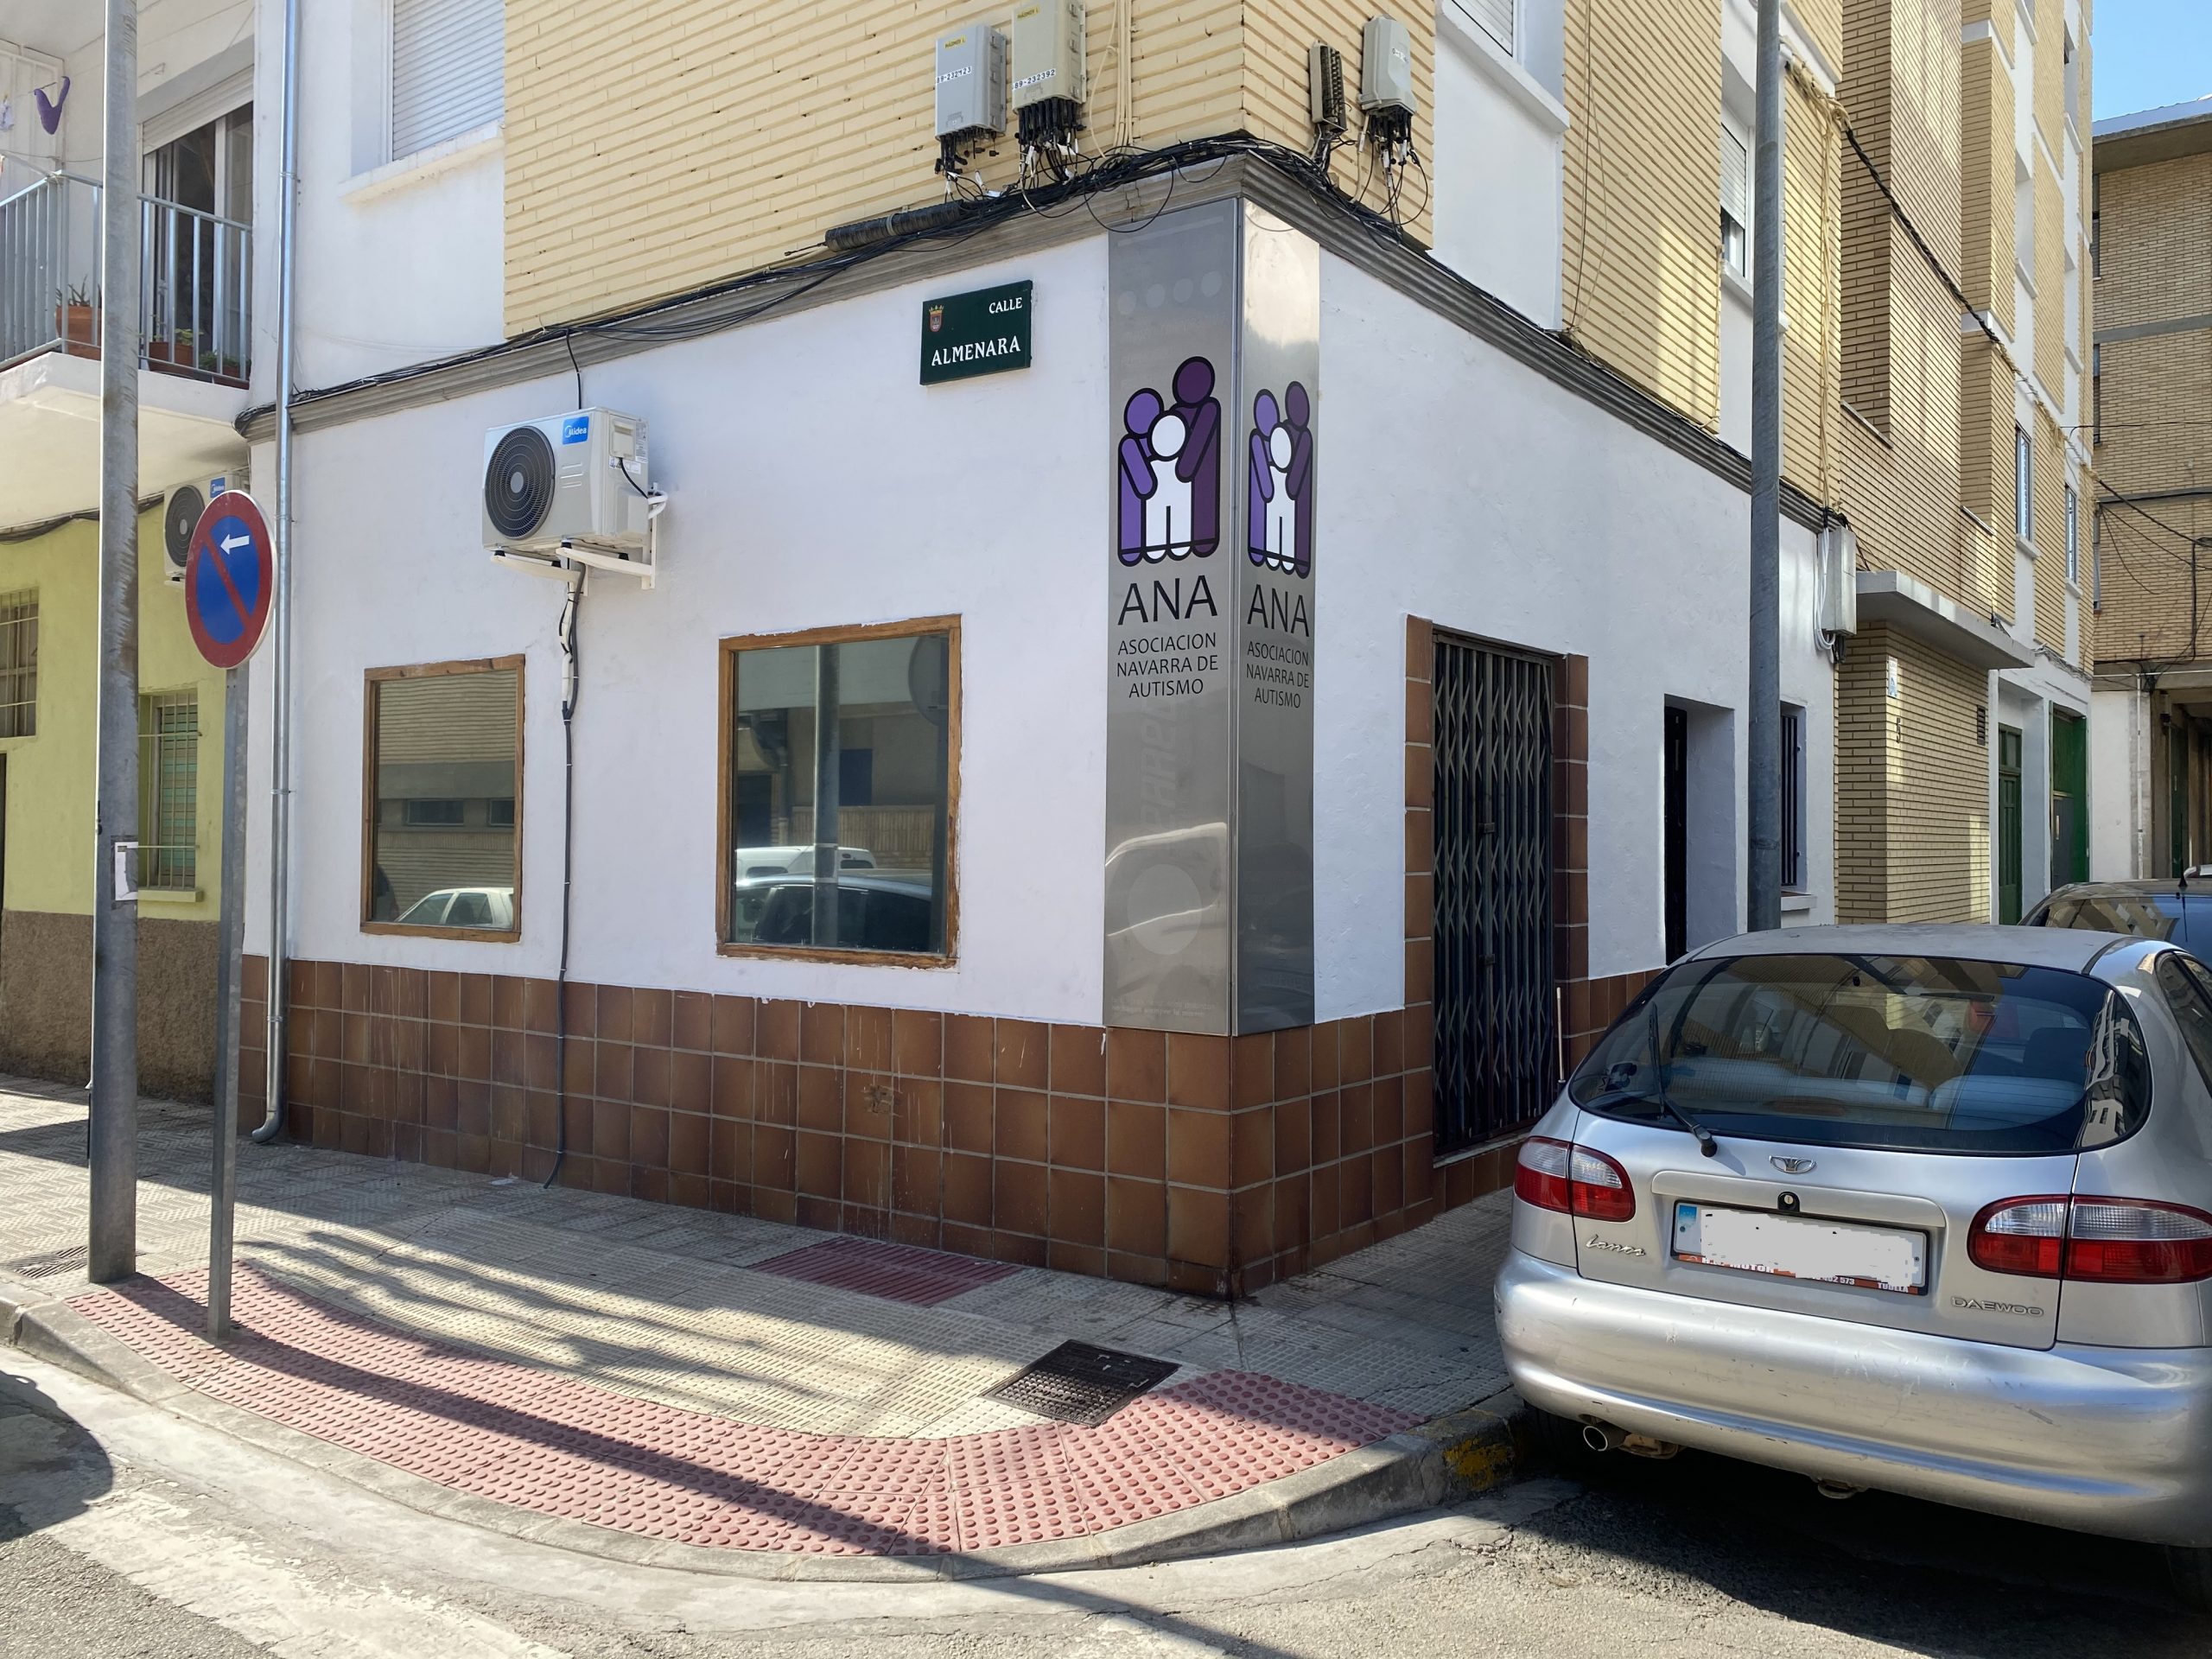 Fotografía tomada desde fuera, de día, de la nueva sede de la Asociación Navarra de Autismo (ANA) en Tudela, en la esquina de la calle Almenara con la calle Frontón, nº 5.